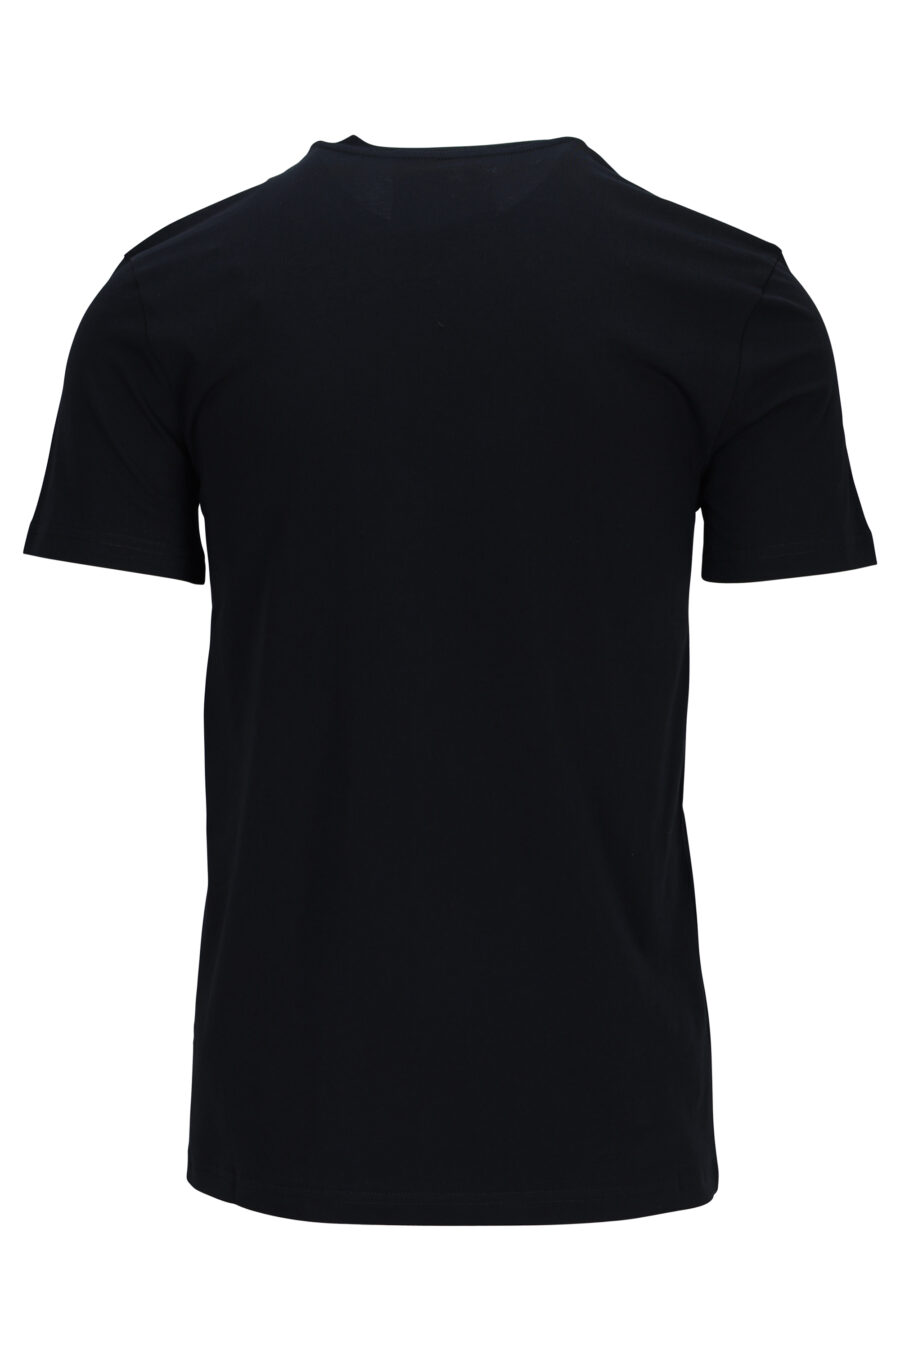 T-shirt preta com maxilogo "couture milano" - 889316936551 1